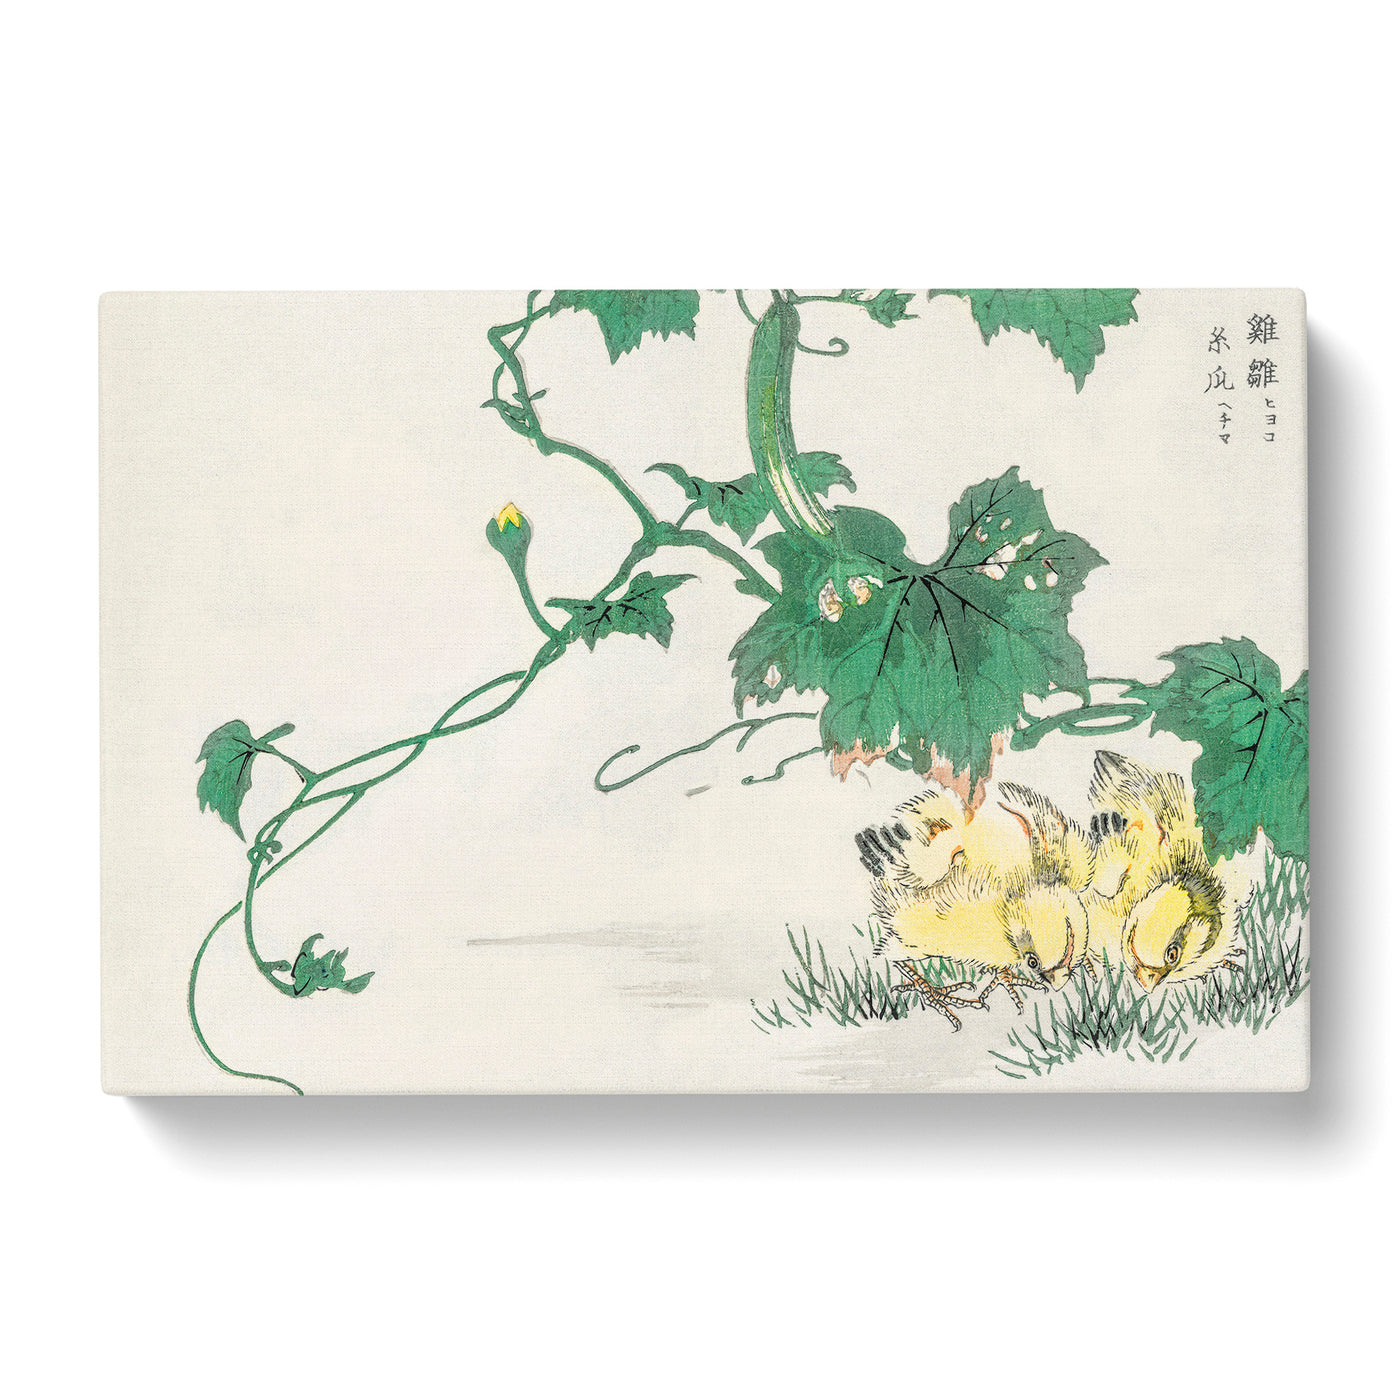 Two Yellow Chicks By Numata Kashu Canvas Print Main Image